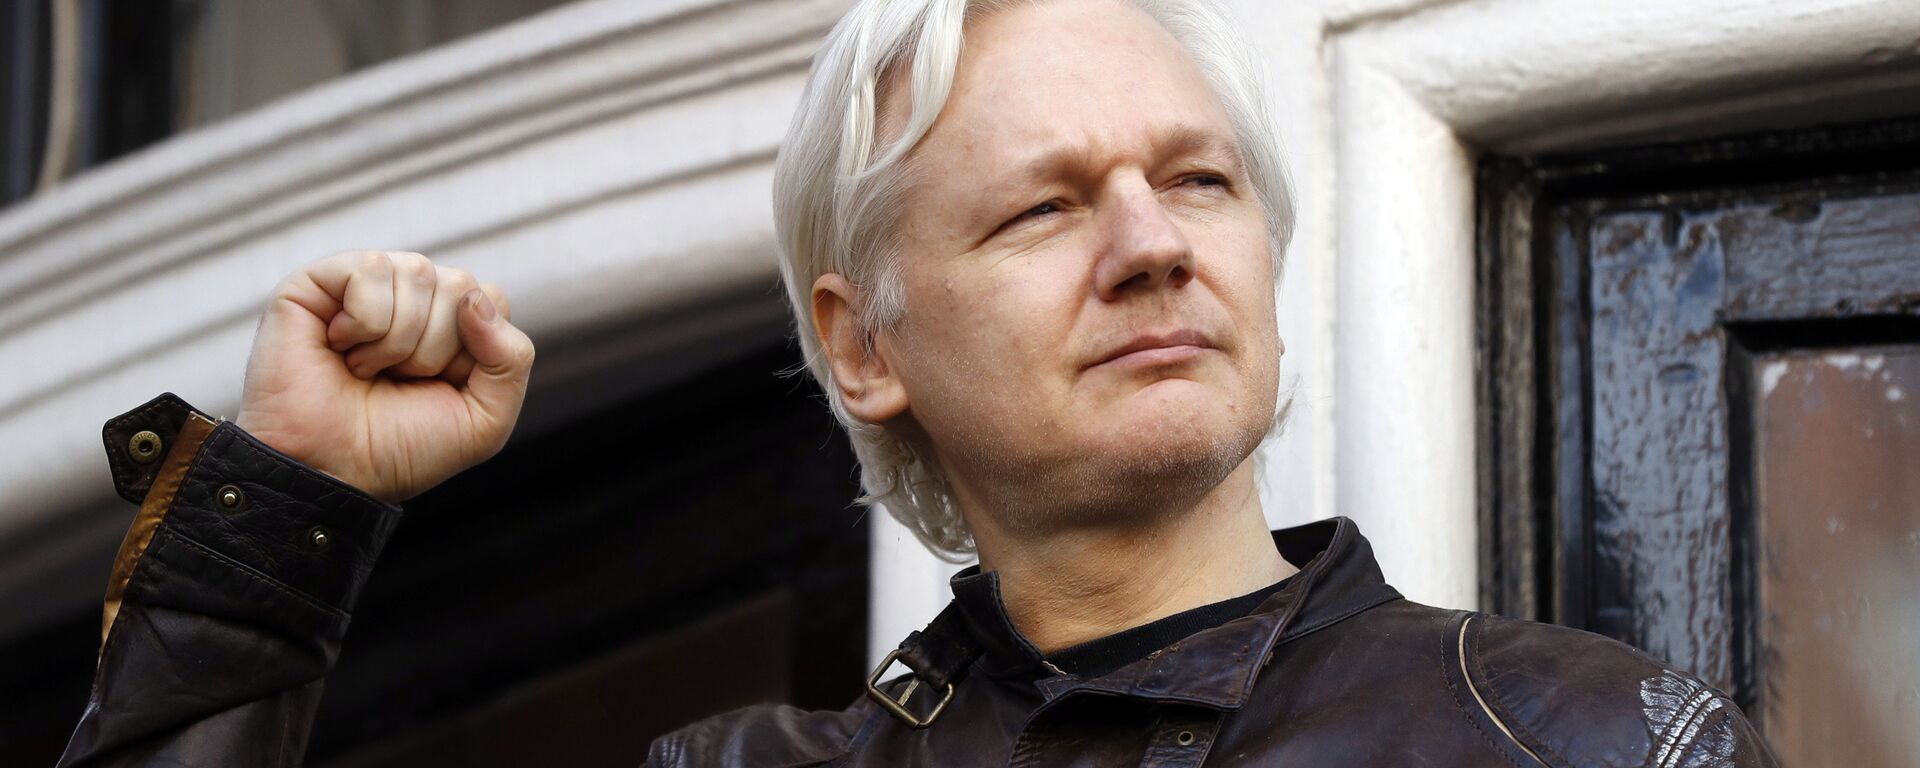 Julian Assange, fundador de Wikileaks - Sputnik Mundo, 1920, 22.10.2021